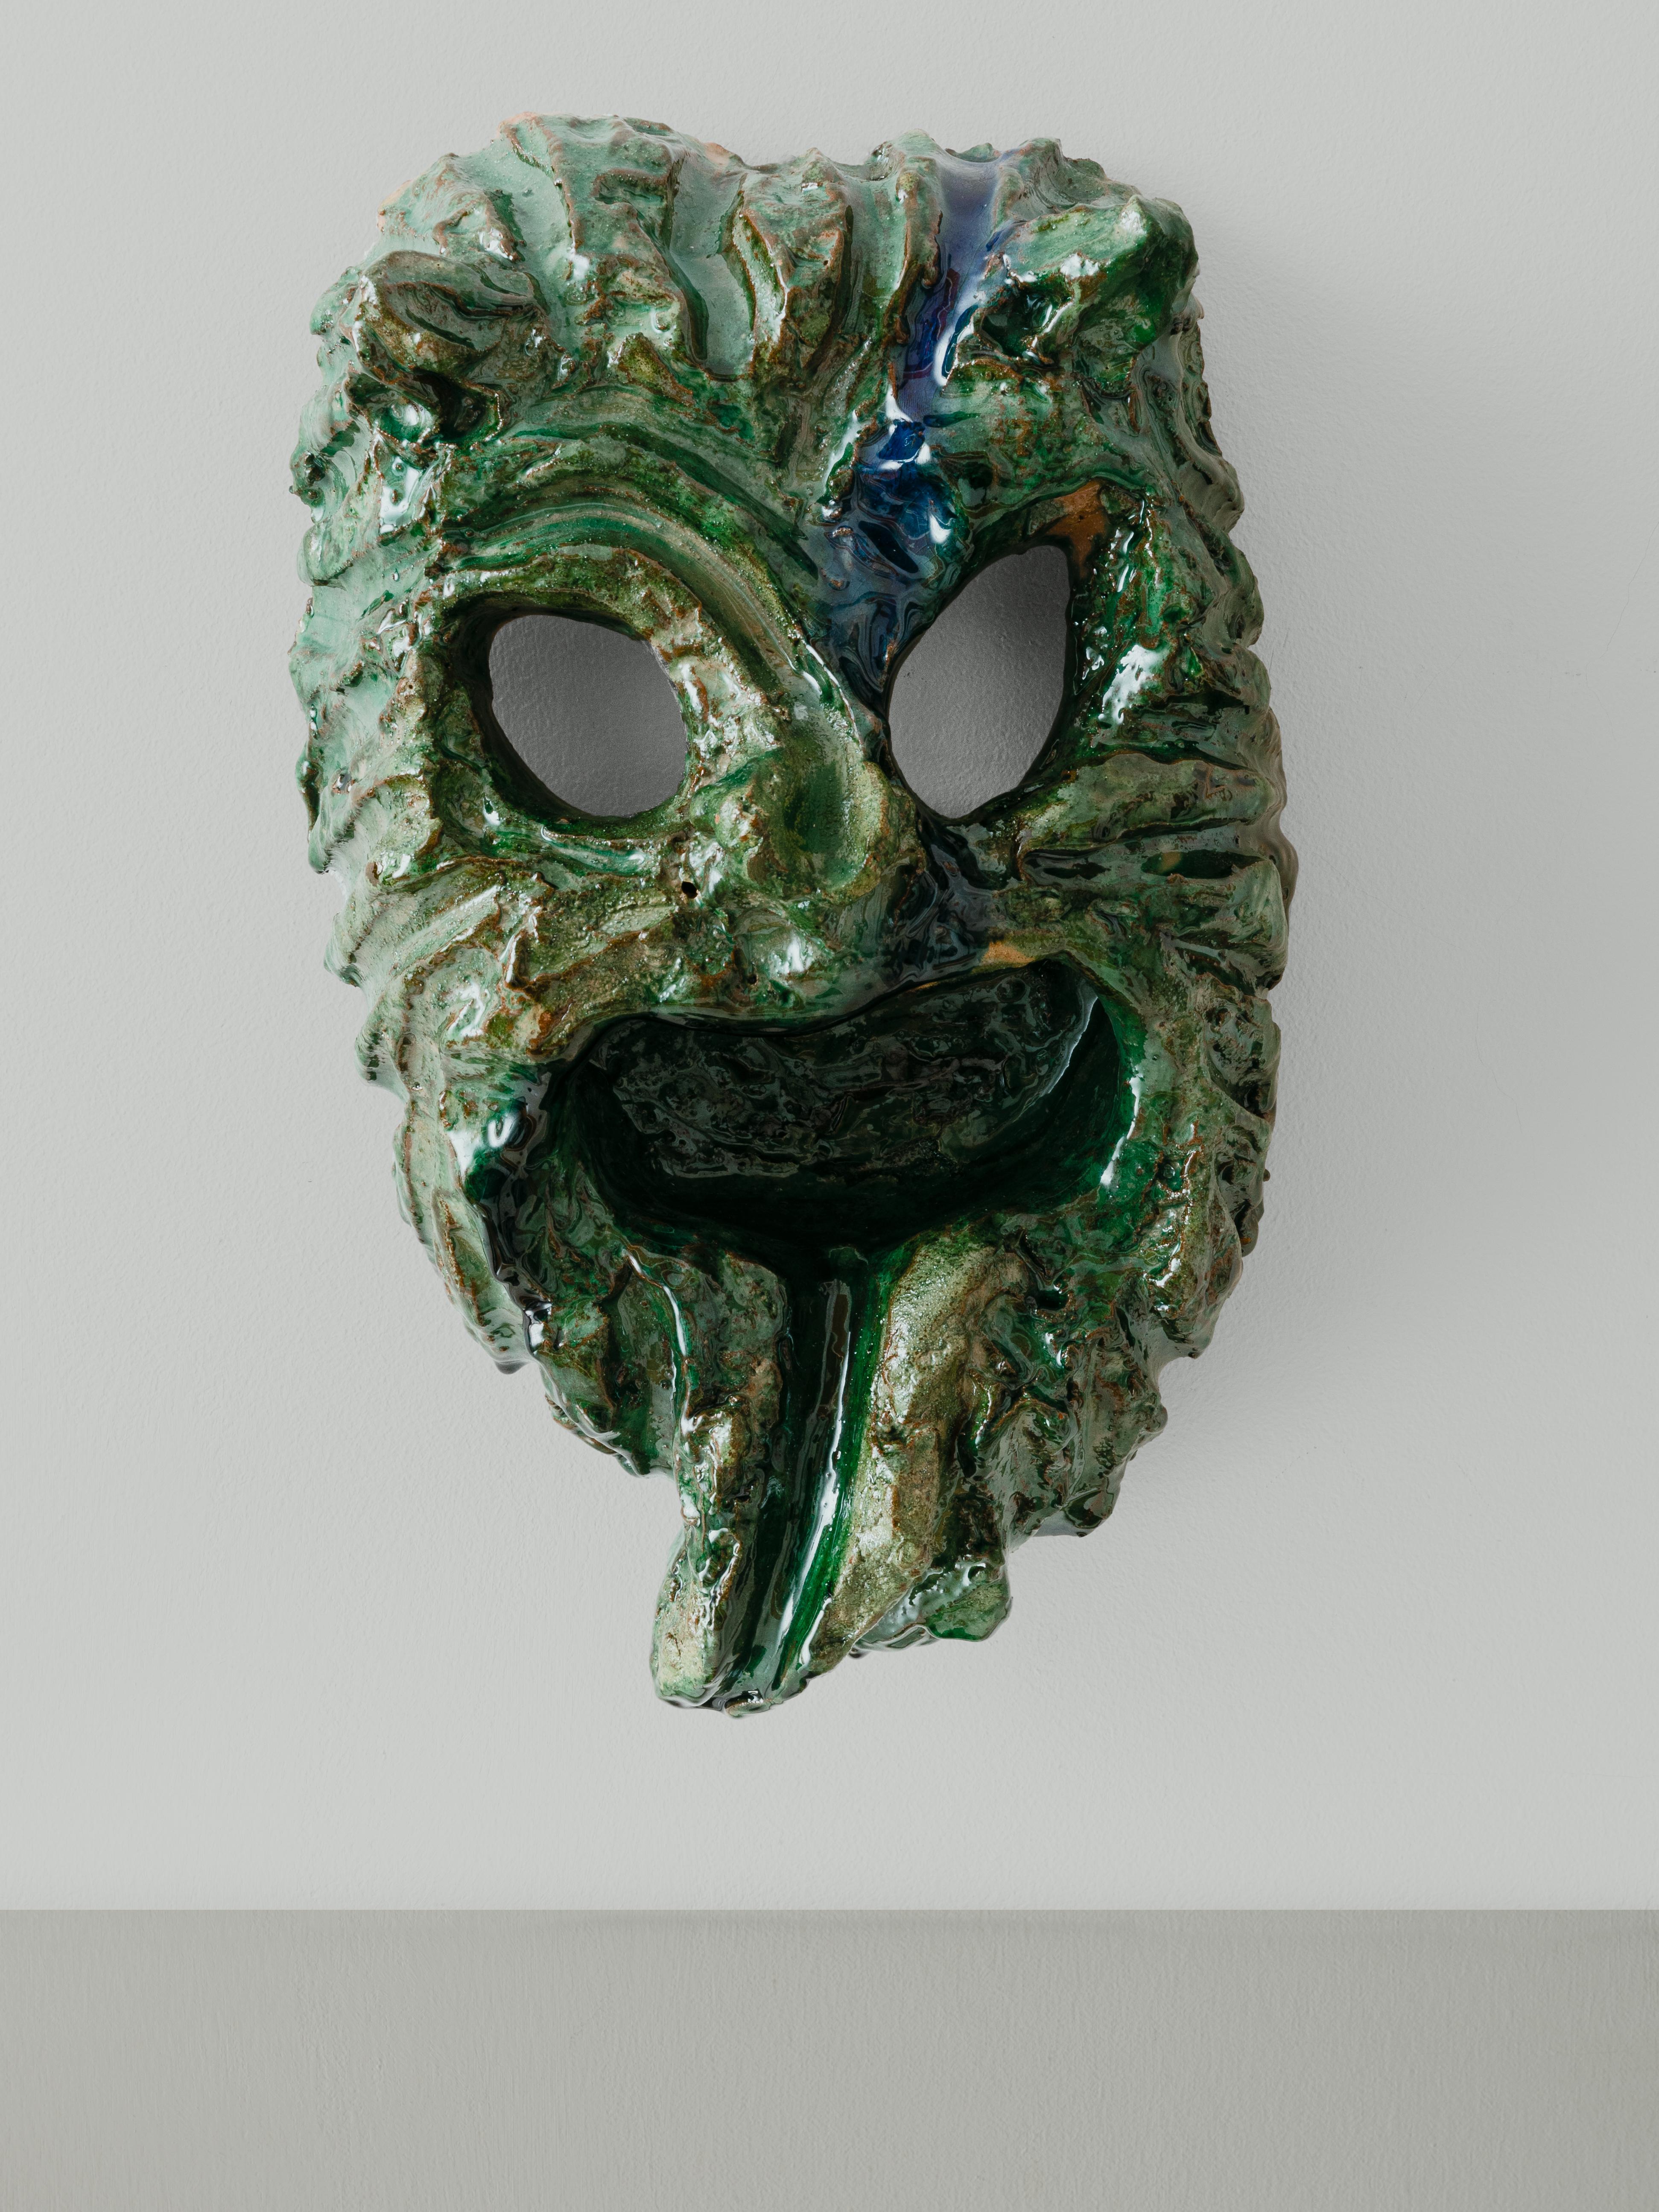 Die apotropäische (das Böse abwehrende) Maske aus Seminara ist an den Hörnern, den großen Augen, dem Schnurrbart und dem schreienden Mund mit heraushängender Zunge zu erkennen. Die Masken werden in riesigen, mit Holz befeuerten Öfen fertiggestellt,